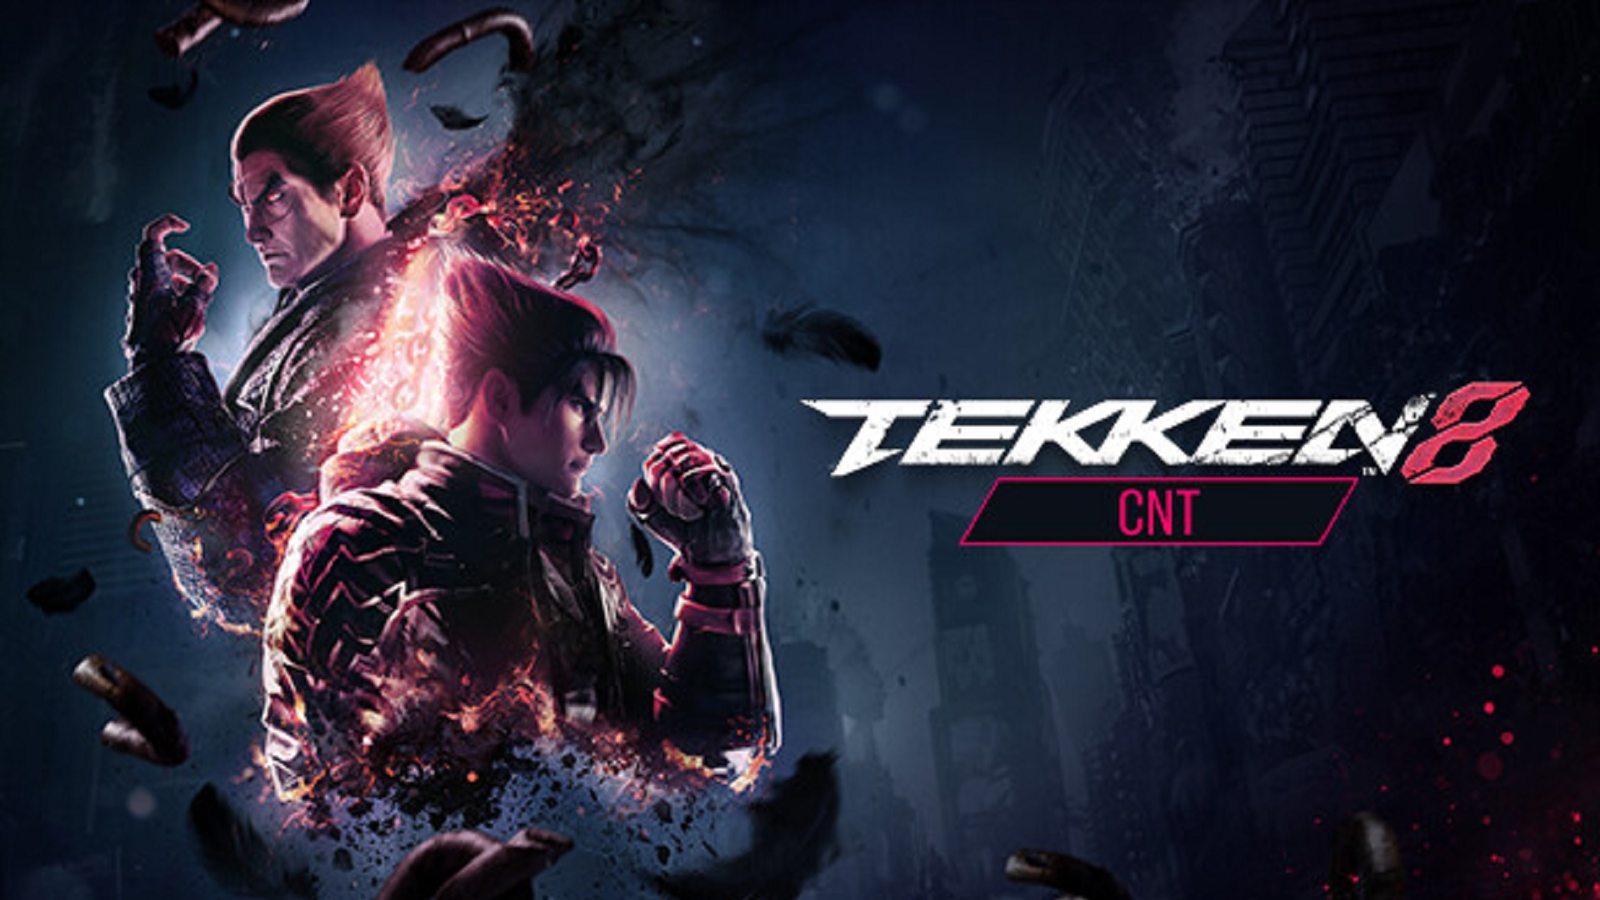 Tekken 8 Closed Network Beta Test - Sign Ups, Platforms, Time